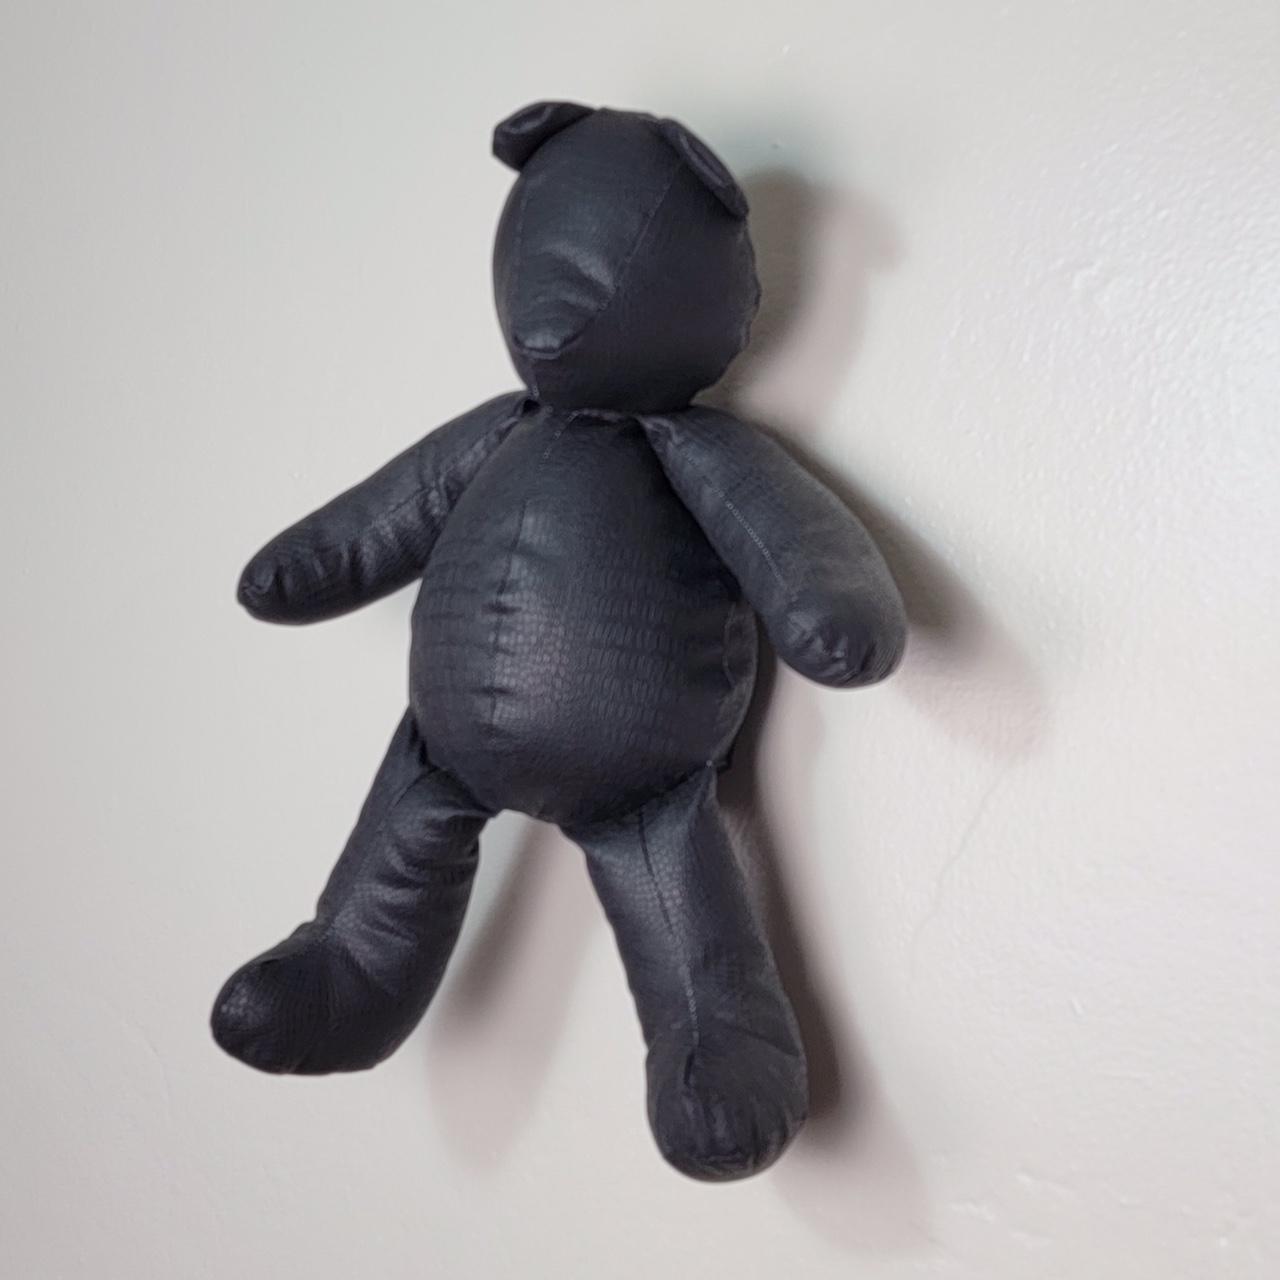 Handmade Designer Teddy Bears